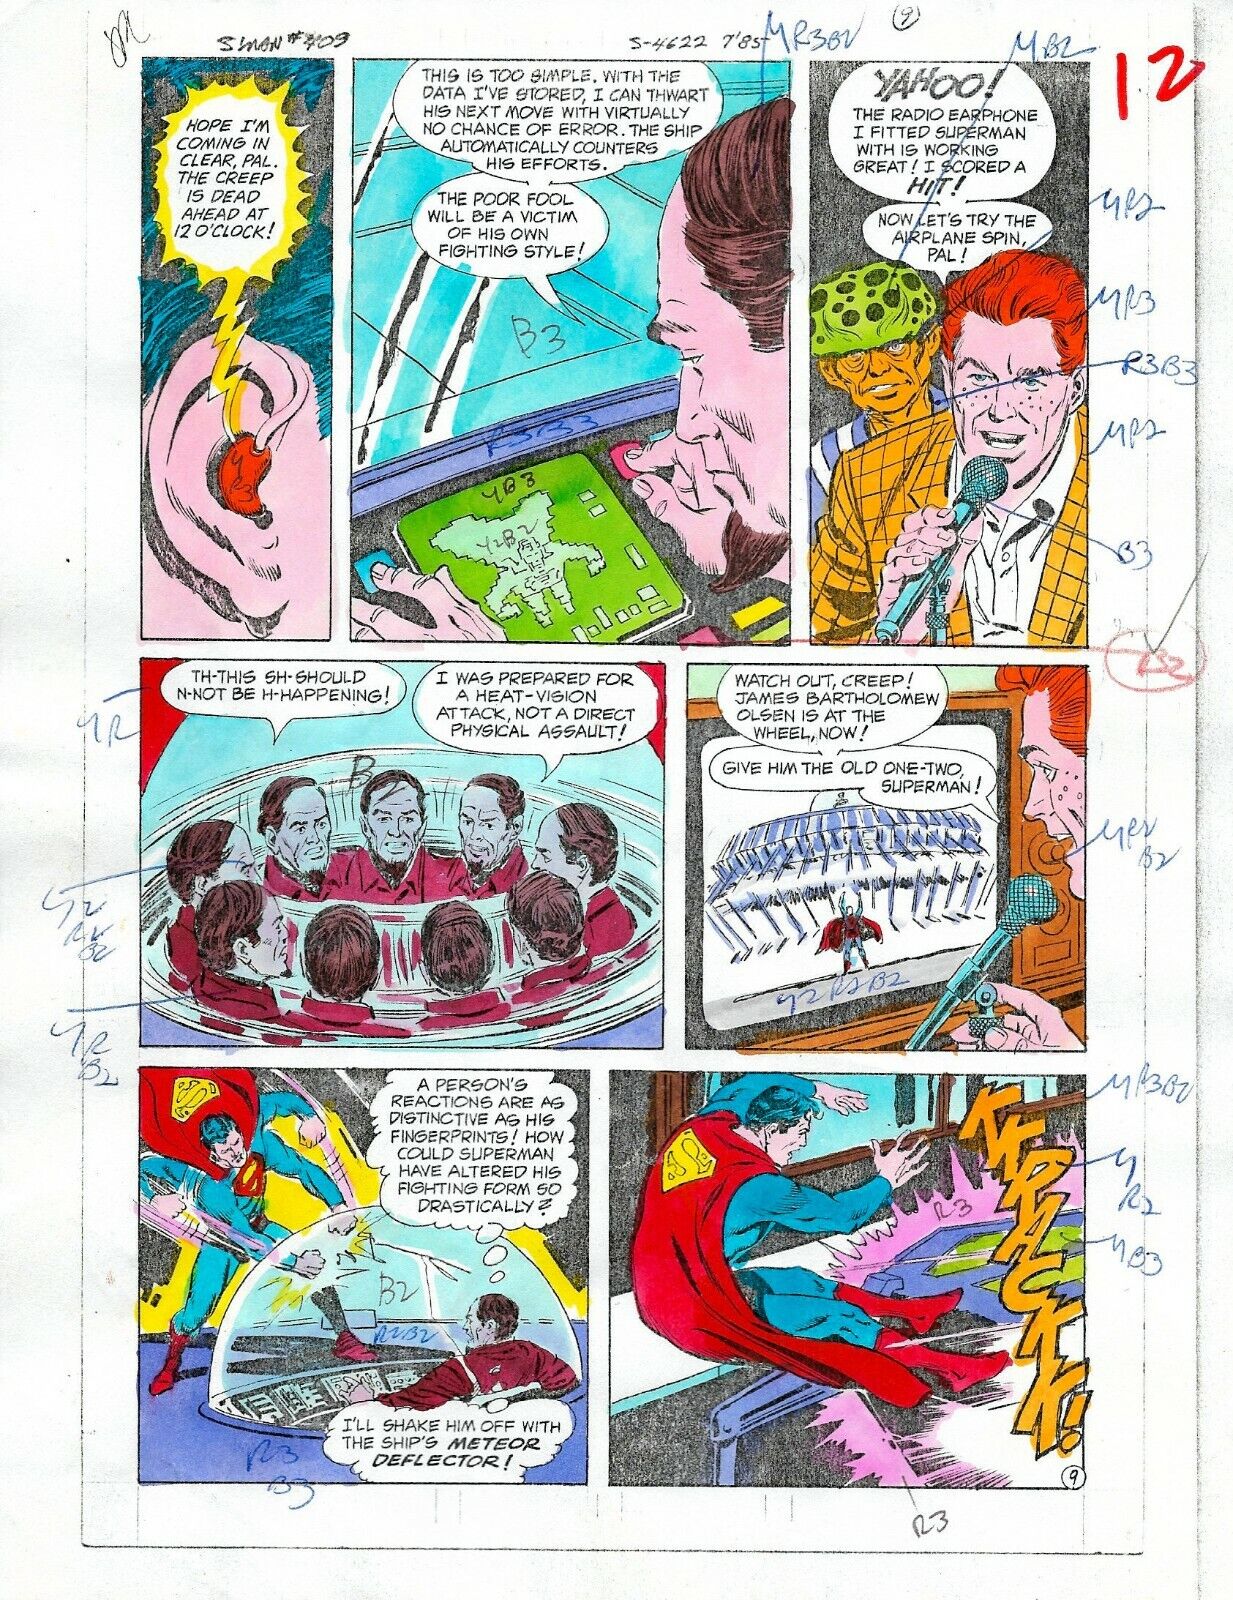 Original 1985 Superman 409 page 12 DC Comics color guide art colorist's artwork